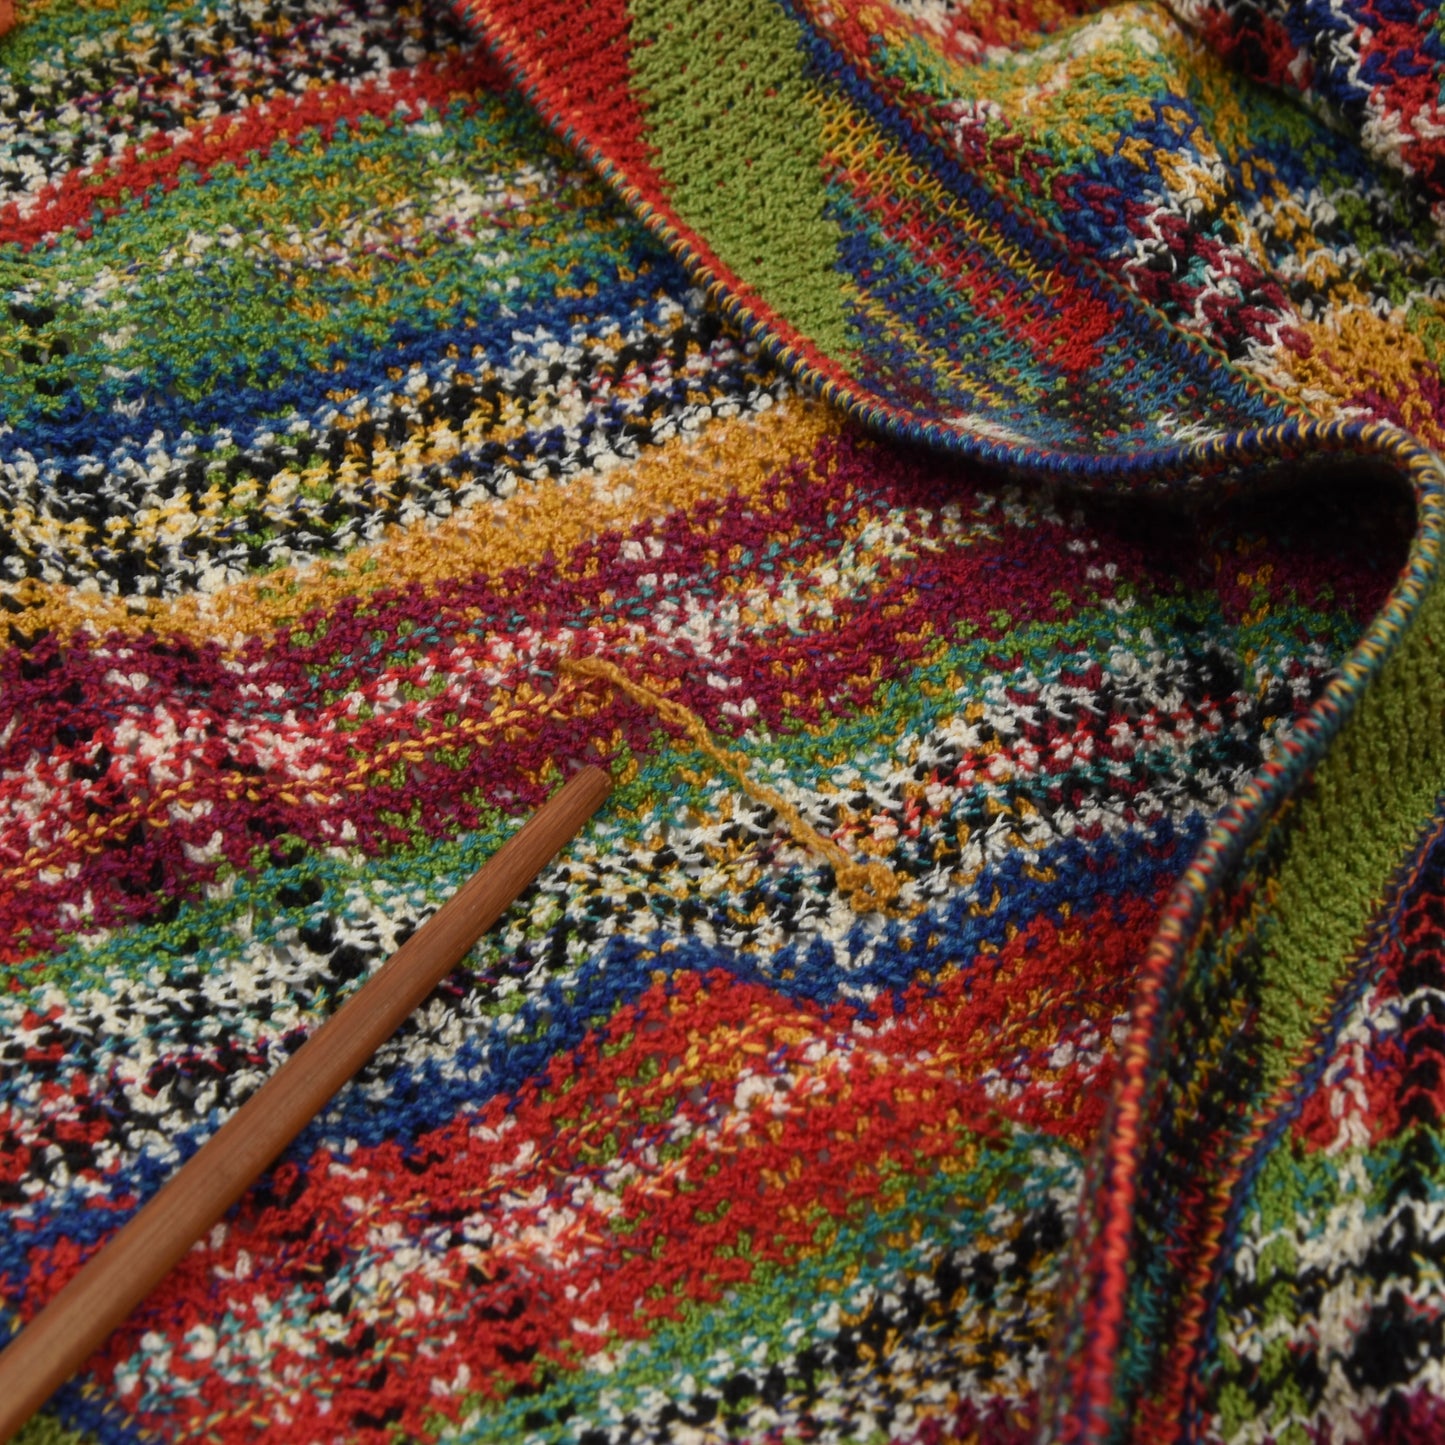 Vintage Missoni Cotton Cardigan Sweater Size 50 - Rainbow Plaid